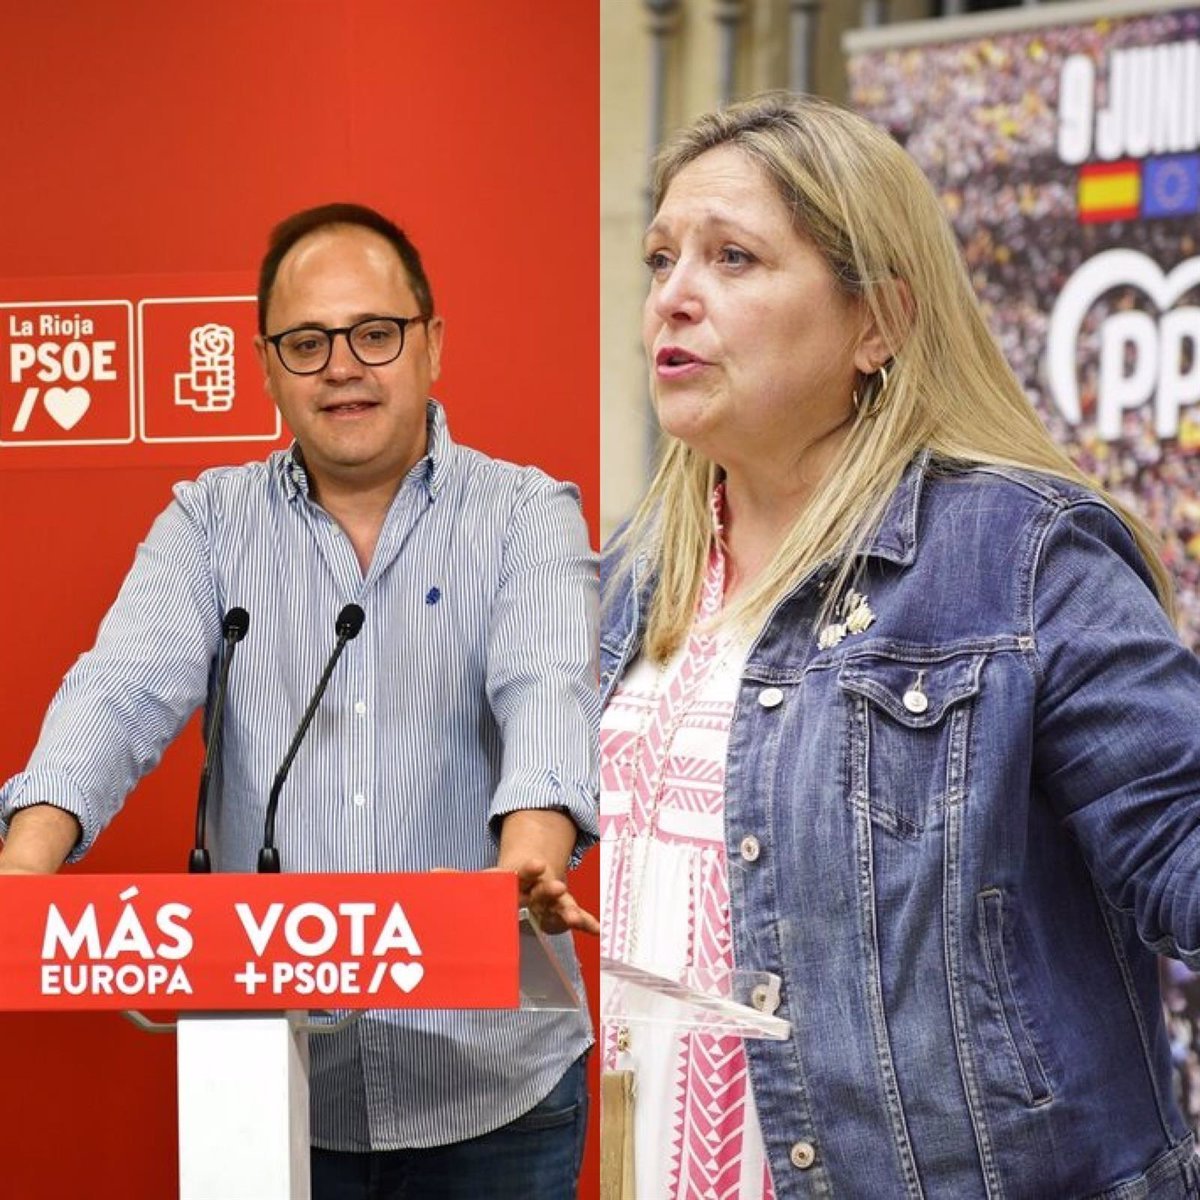 La Rioja contará por primera vez con dos eurodiputados, la «popular» Esther Herranz y el socialista César Luena